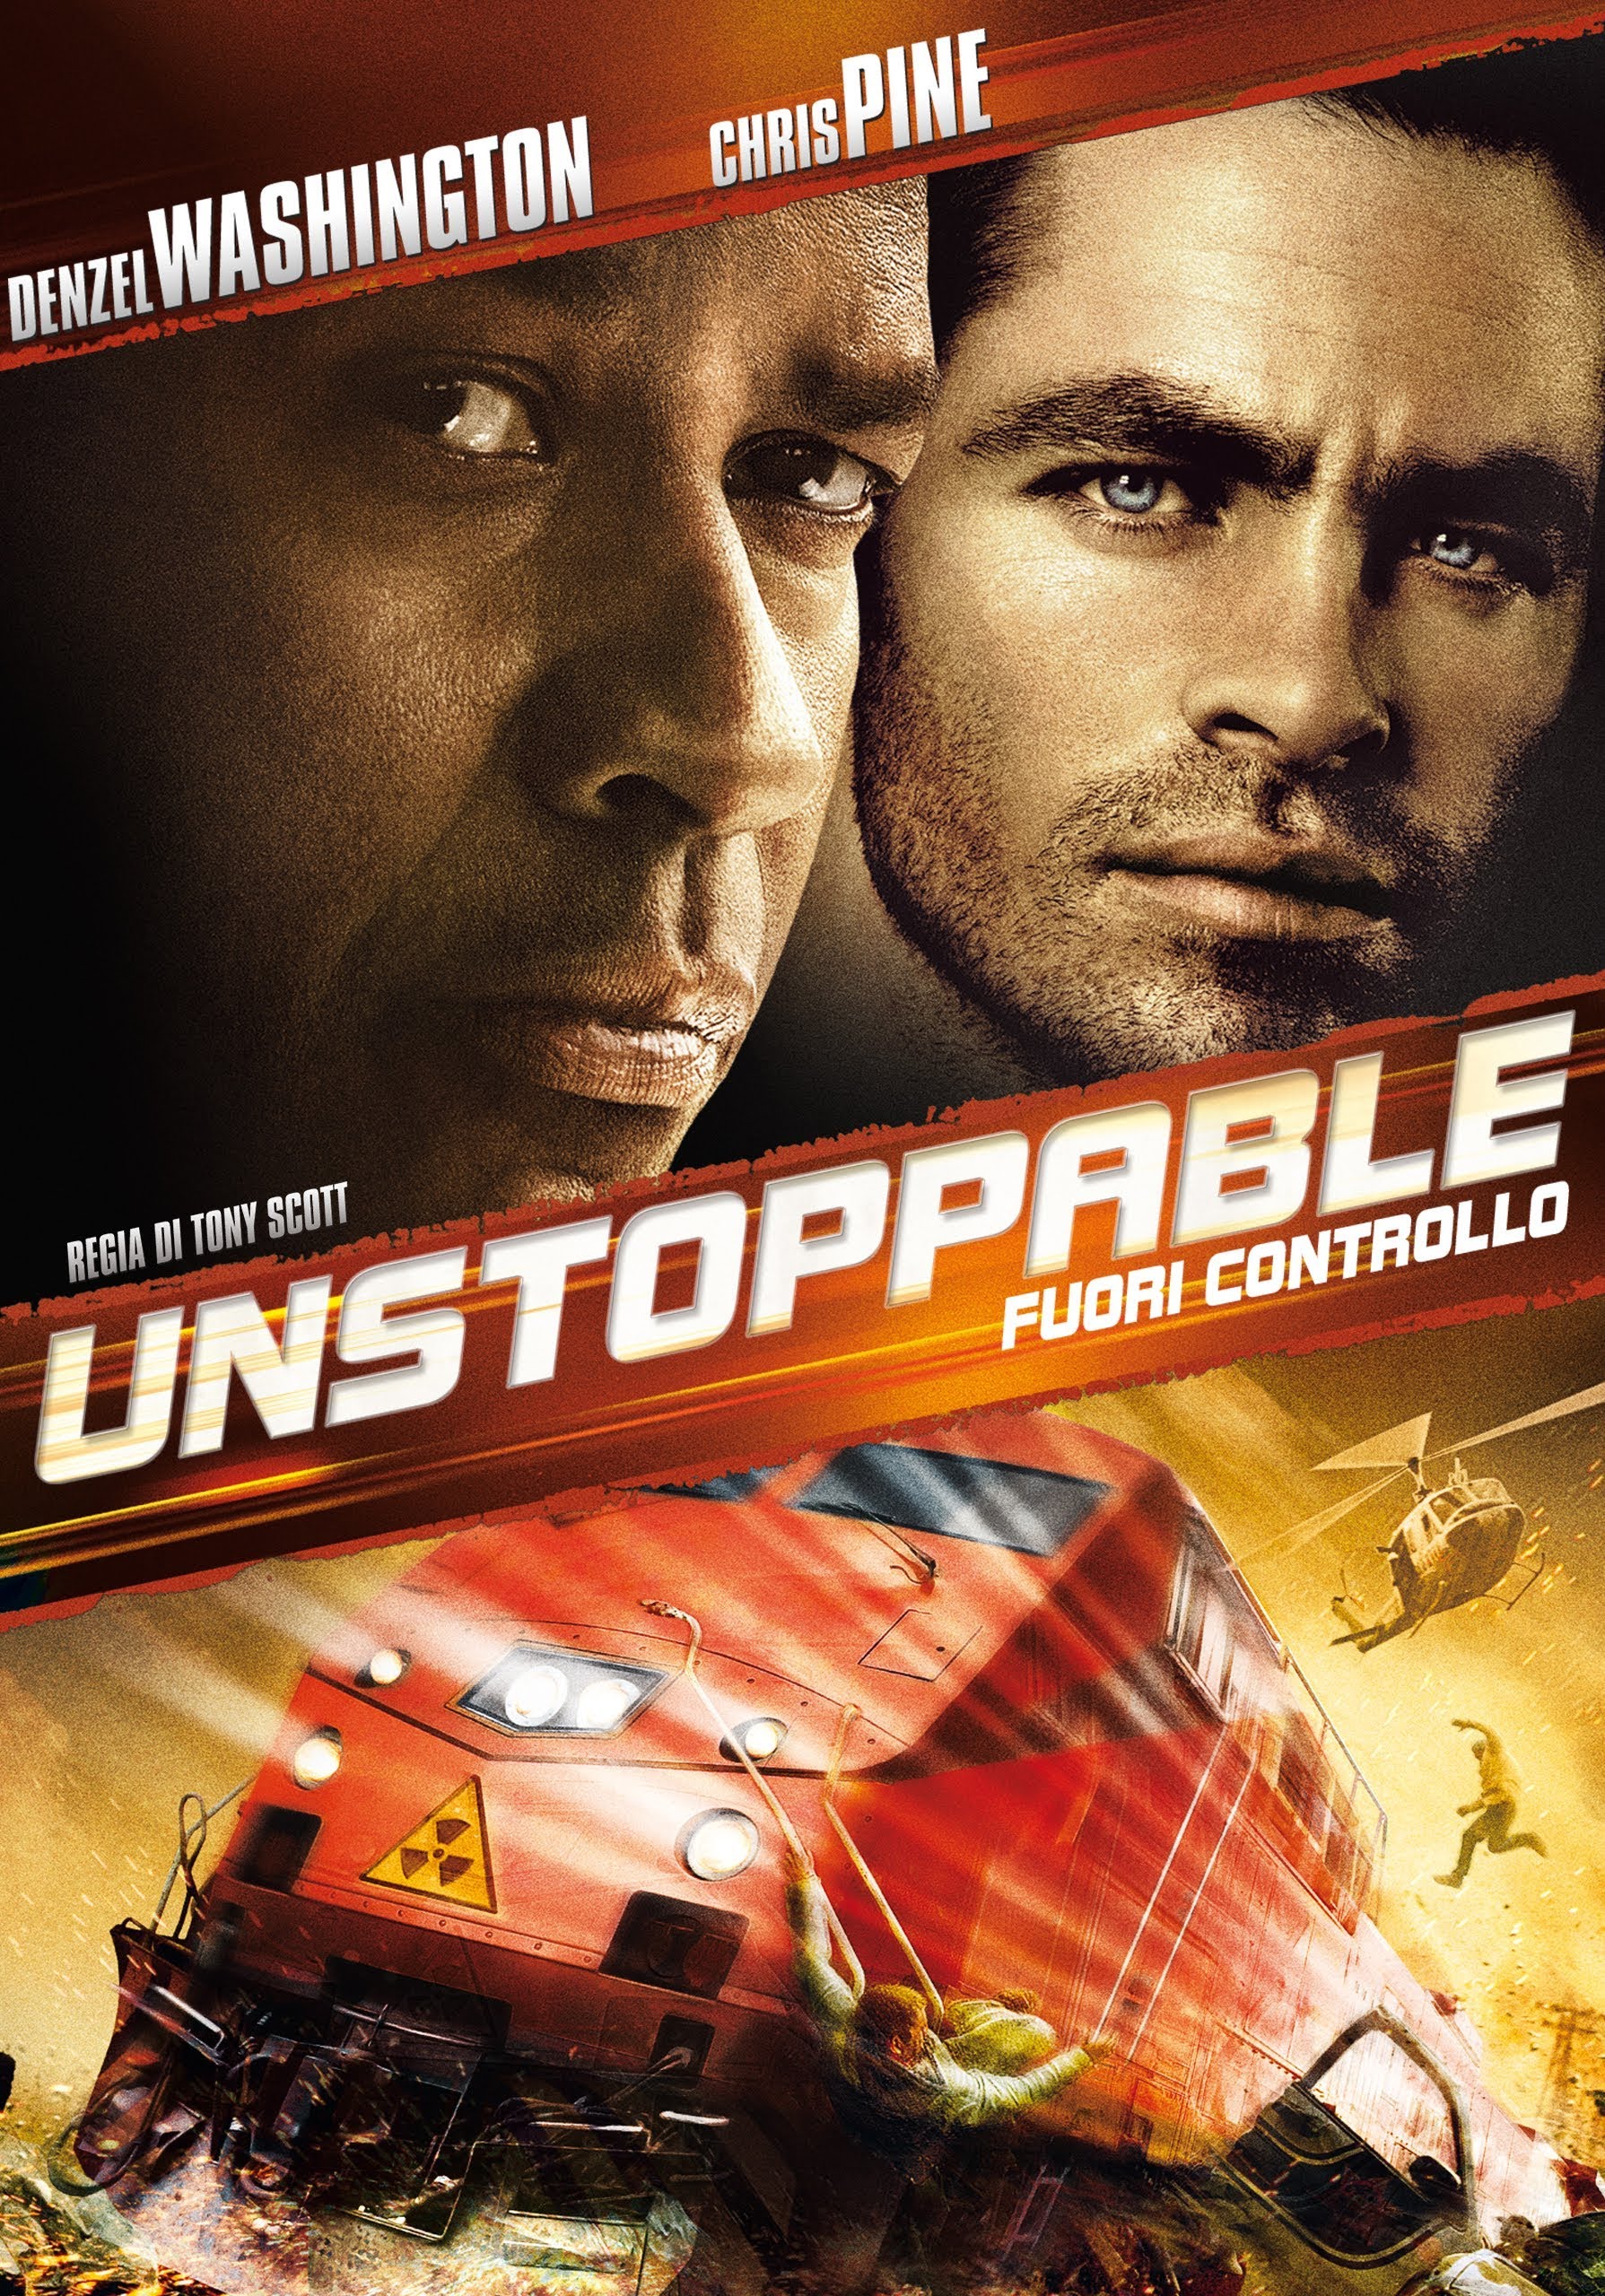 Unstoppable – Fuori controllo [HD] (2010)